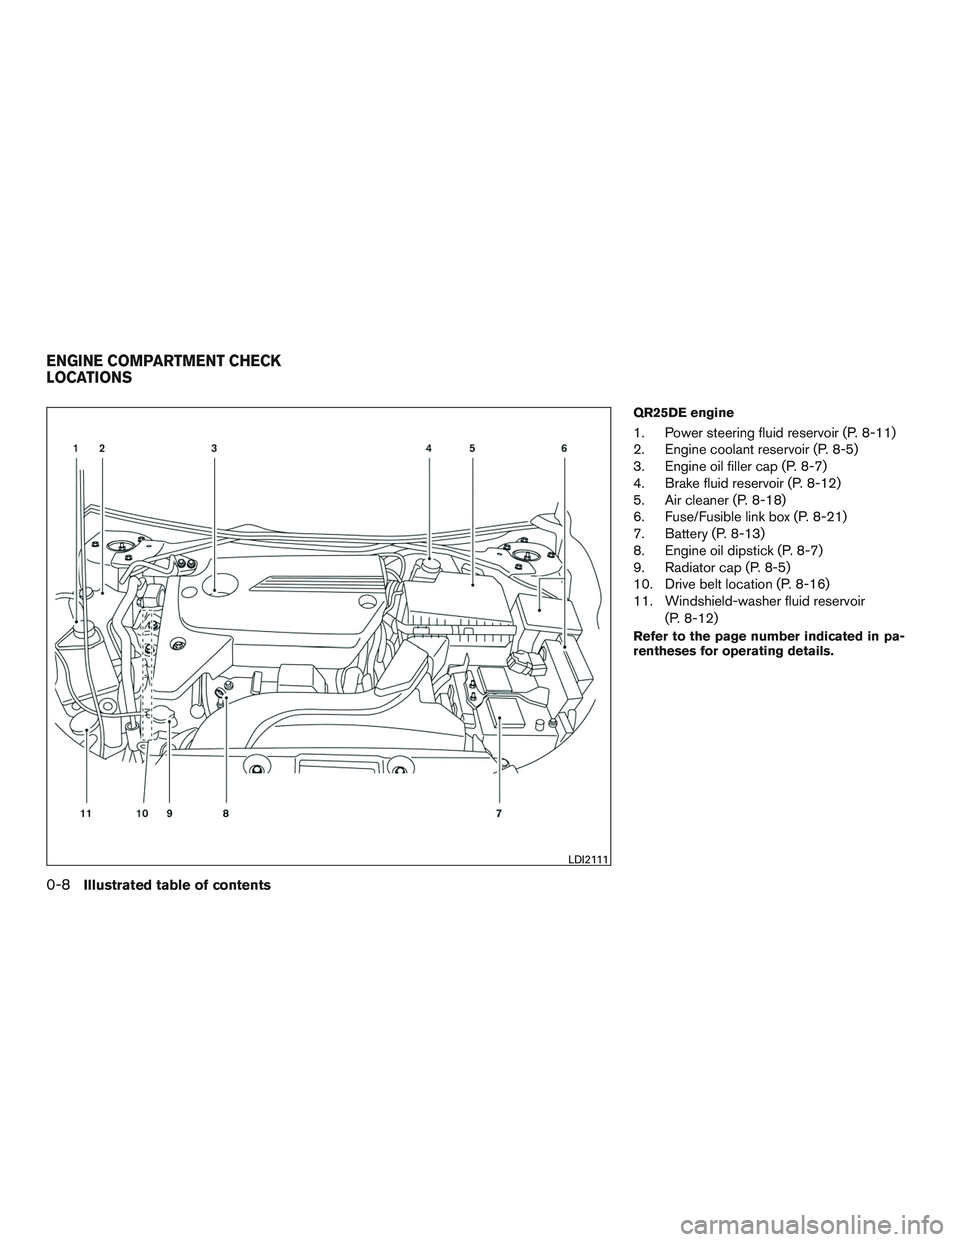 NISSAN ALTIMA SEDAN 2017 User Guide QR25DE engine
1. Power steering fluid reservoir (P. 8-11)
2. Engine coolant reservoir (P. 8-5)
3. Engine oil filler cap (P. 8-7)
4. Brake fluid reservoir (P. 8-12)
5. Air cleaner (P. 8-18)
6. Fuse/Fus